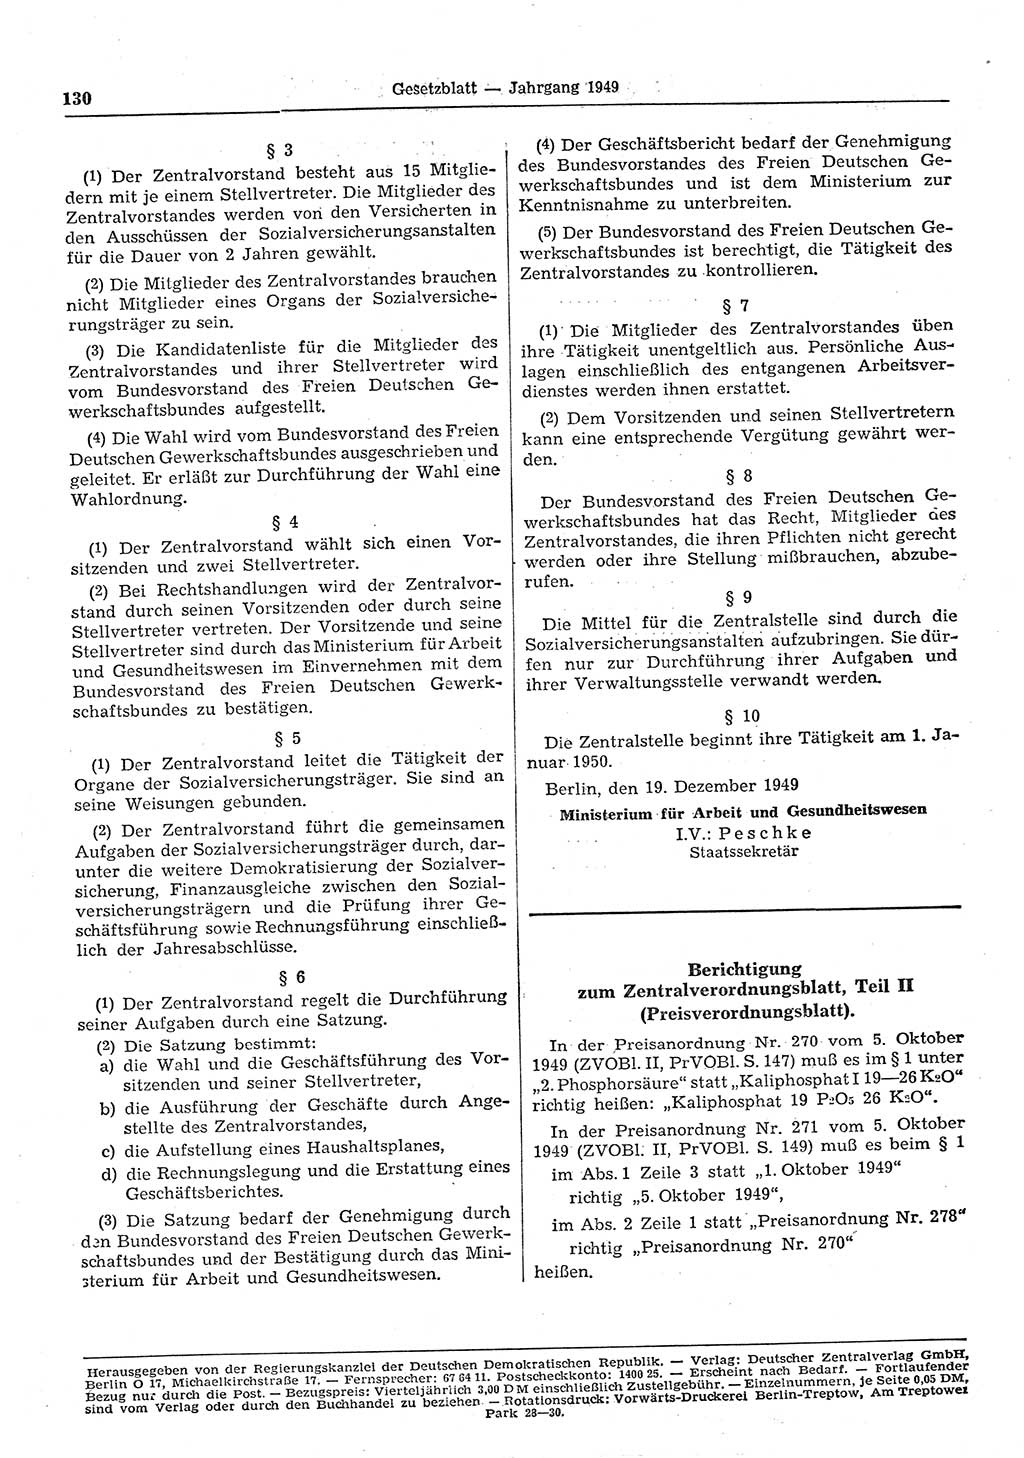 Gesetzblatt (GBl.) der Deutschen Demokratischen Republik (DDR) 1949, Seite 130 (GBl. DDR 1949, S. 130)